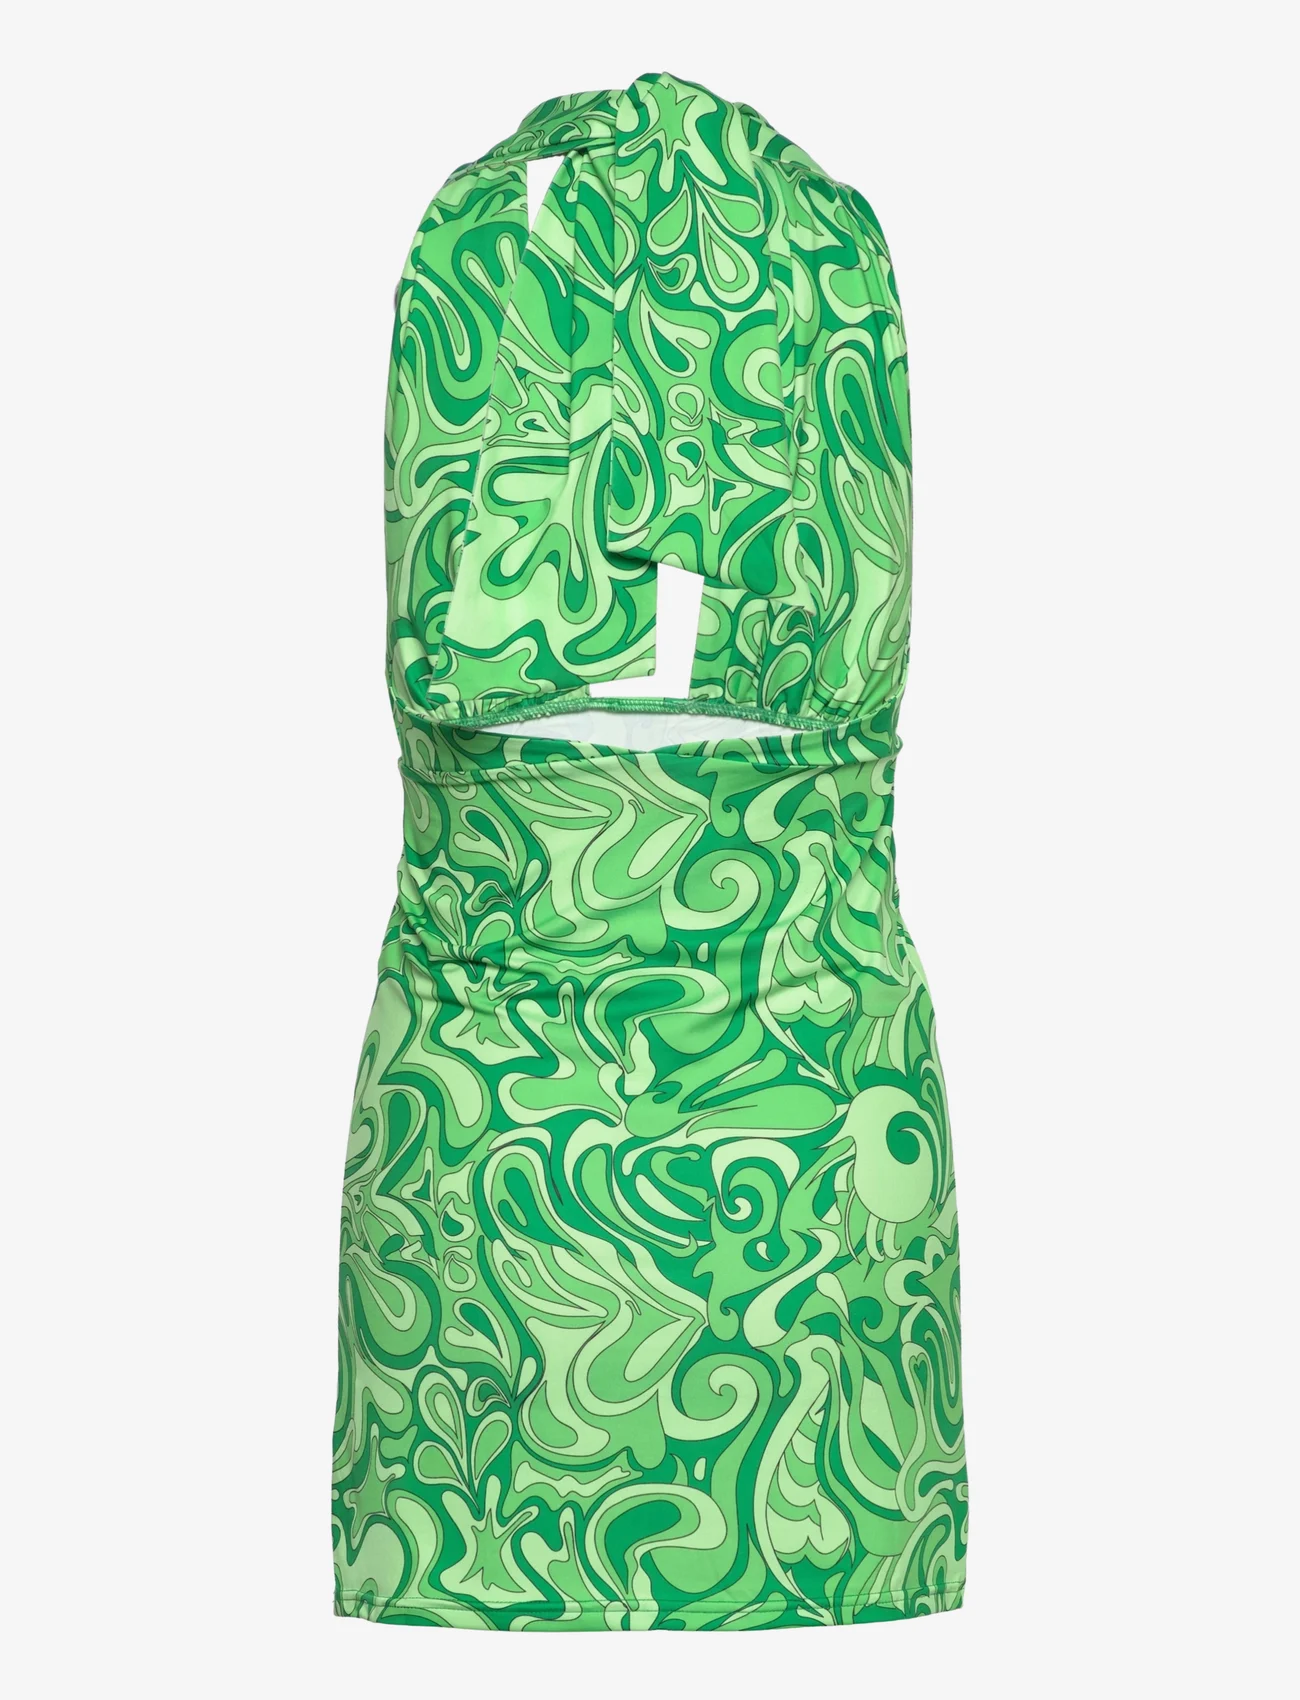 Barbara Kristoffersen by Rosemunde - Dress - etuikleider - portobello green print - 1